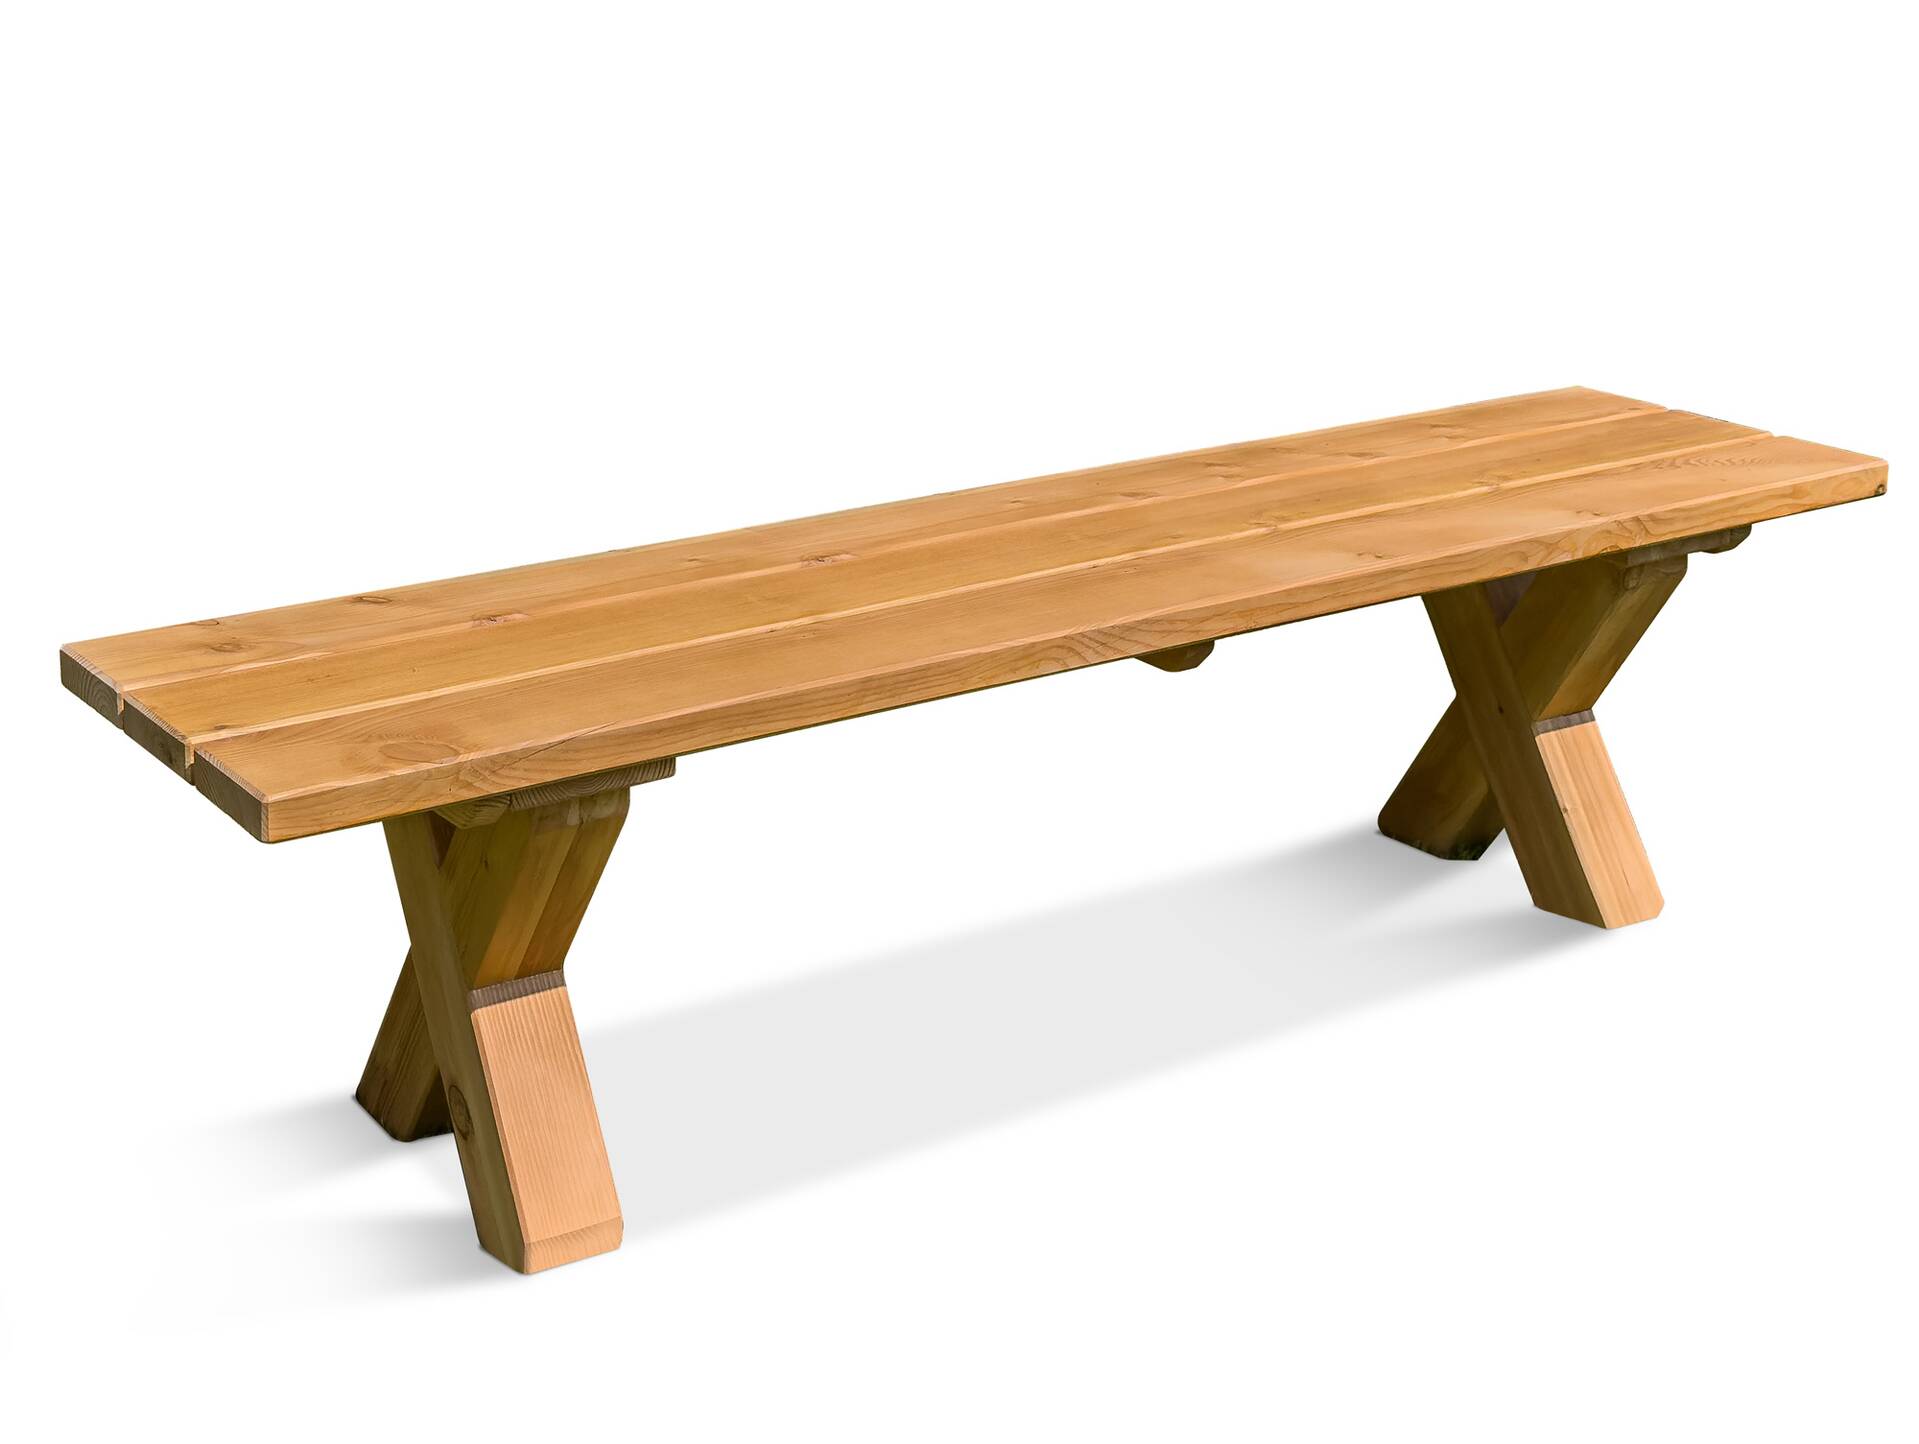 CANCUN Sitzbank / Gartenbank mit X-Beinen, Material Massivholz, Lärche natur 220 cm | ohne Rückenlehne